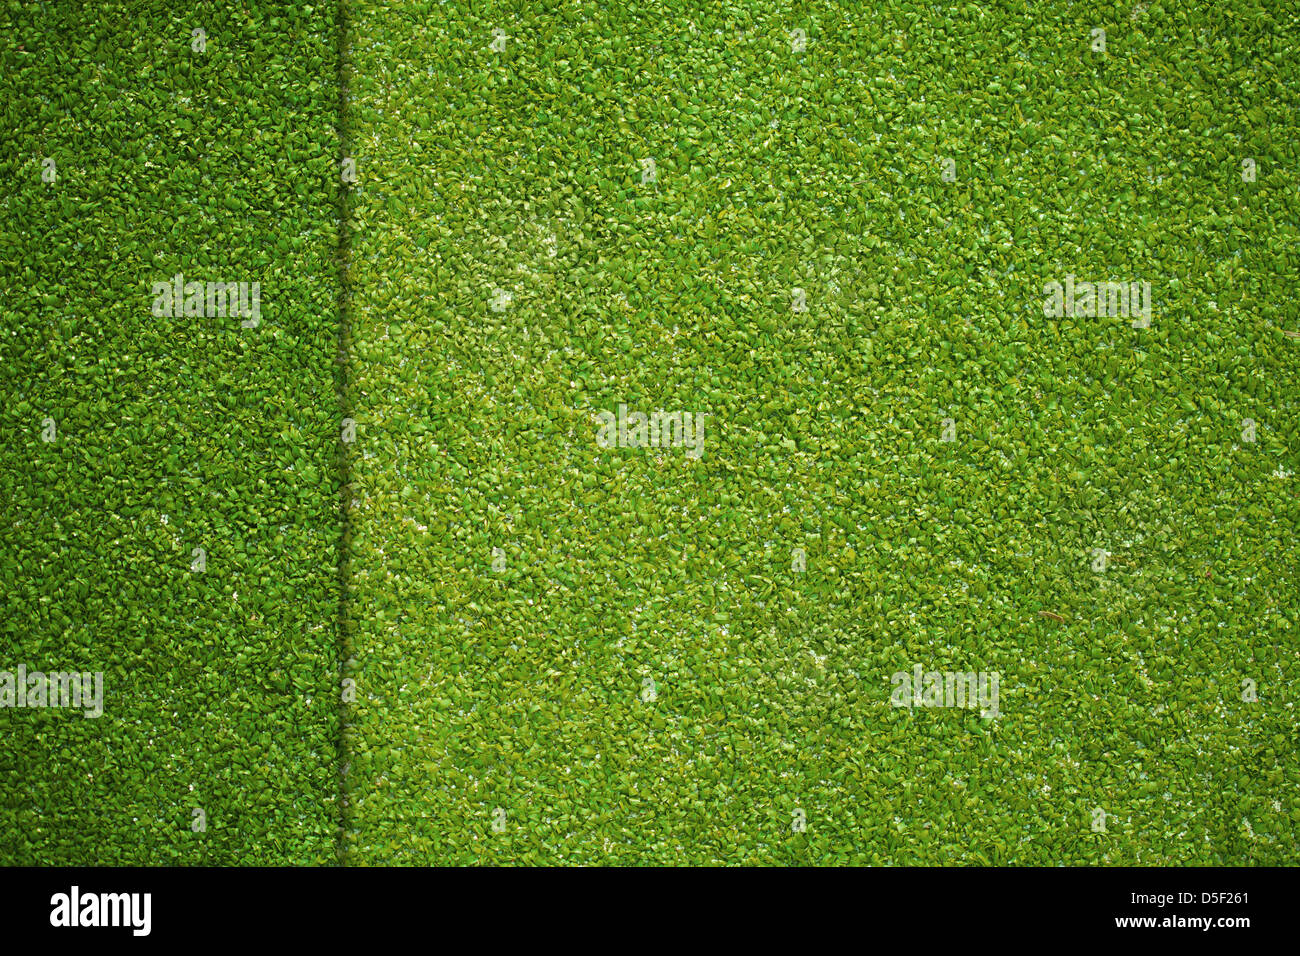 La texture de l'herbe artificielle sur le terrain de golf vue d'en haut Banque D'Images